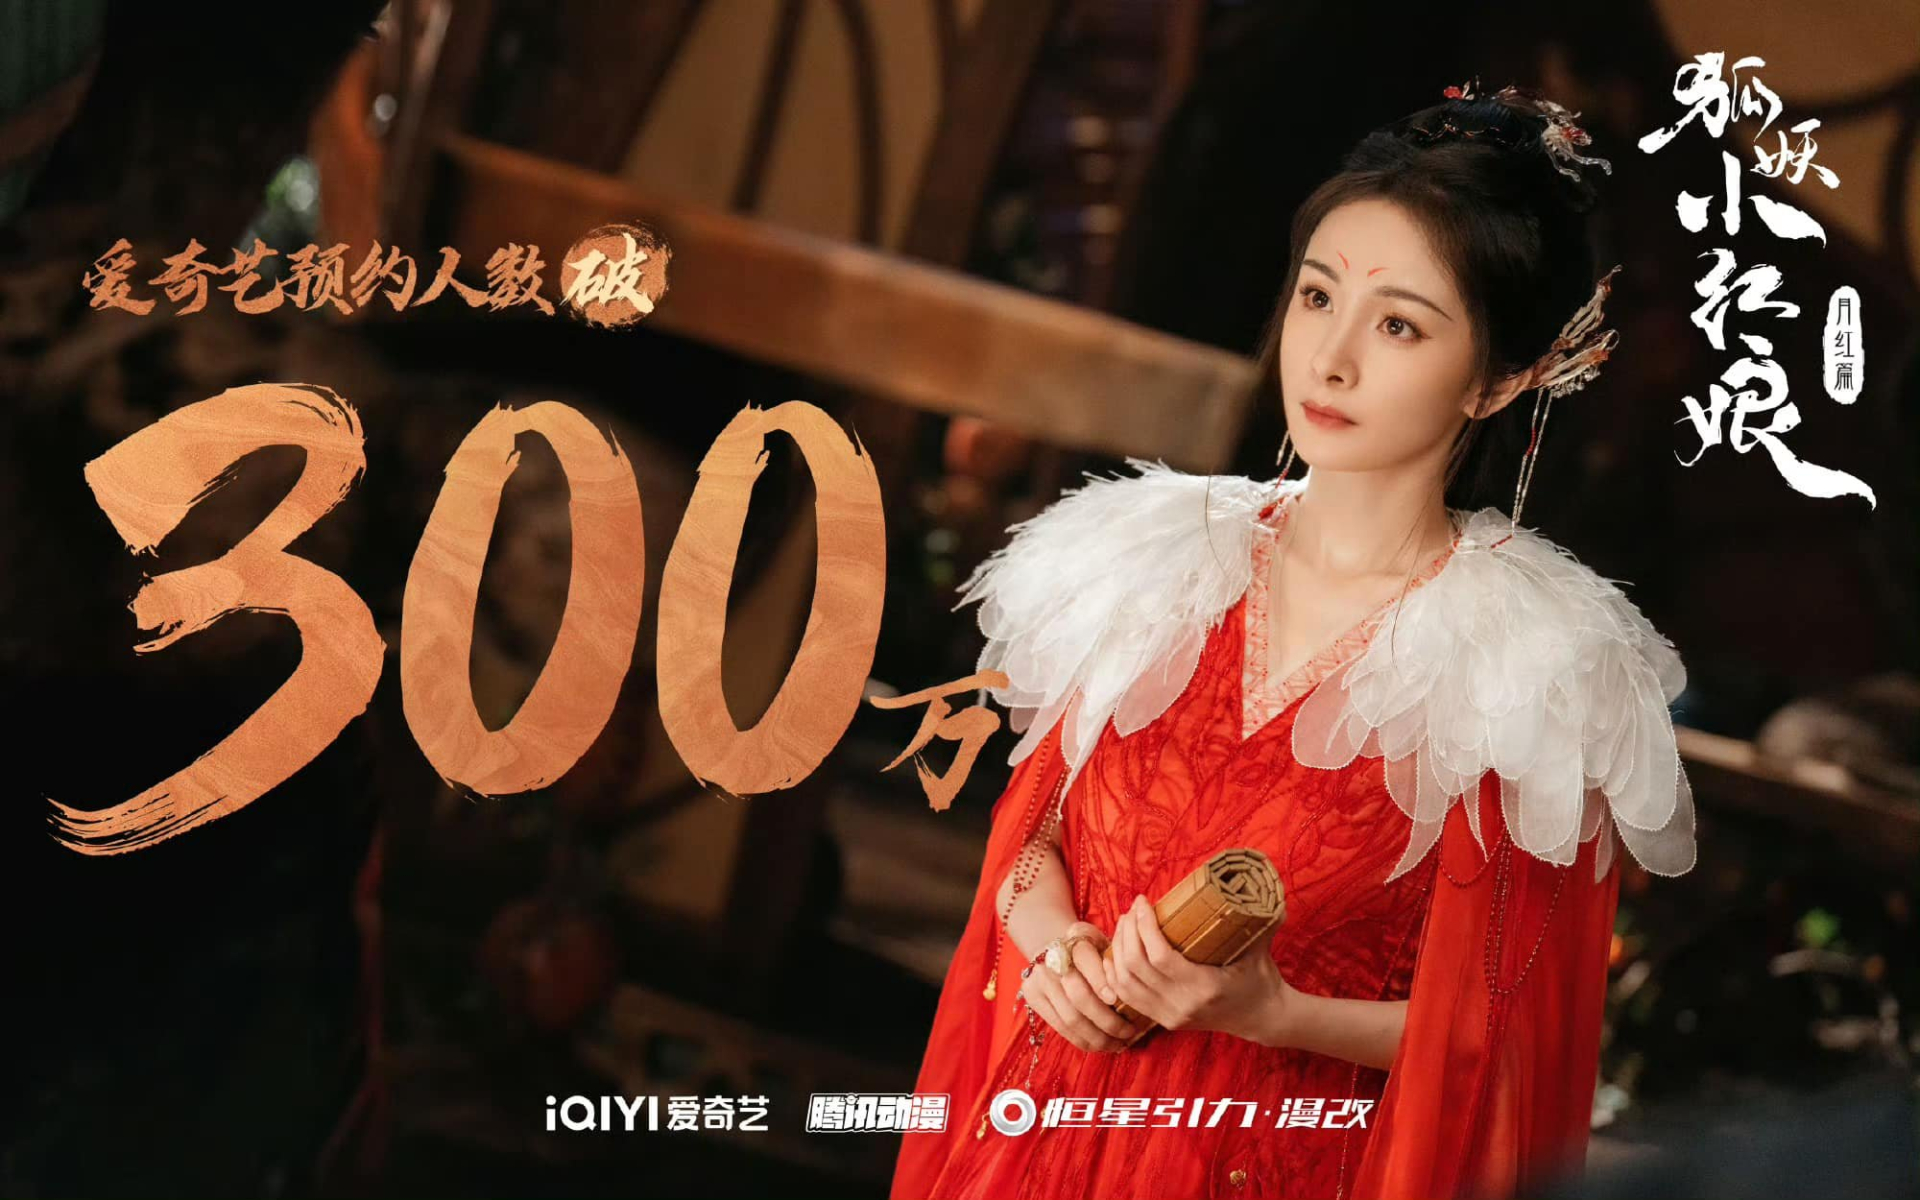 Hồ Yêu Tiểu Hồng Nương: Nguyệt Hồng Thiên đạt 3 triệu lượt đặt xem trước, fan mong lịch chiếu sớm - ảnh 2